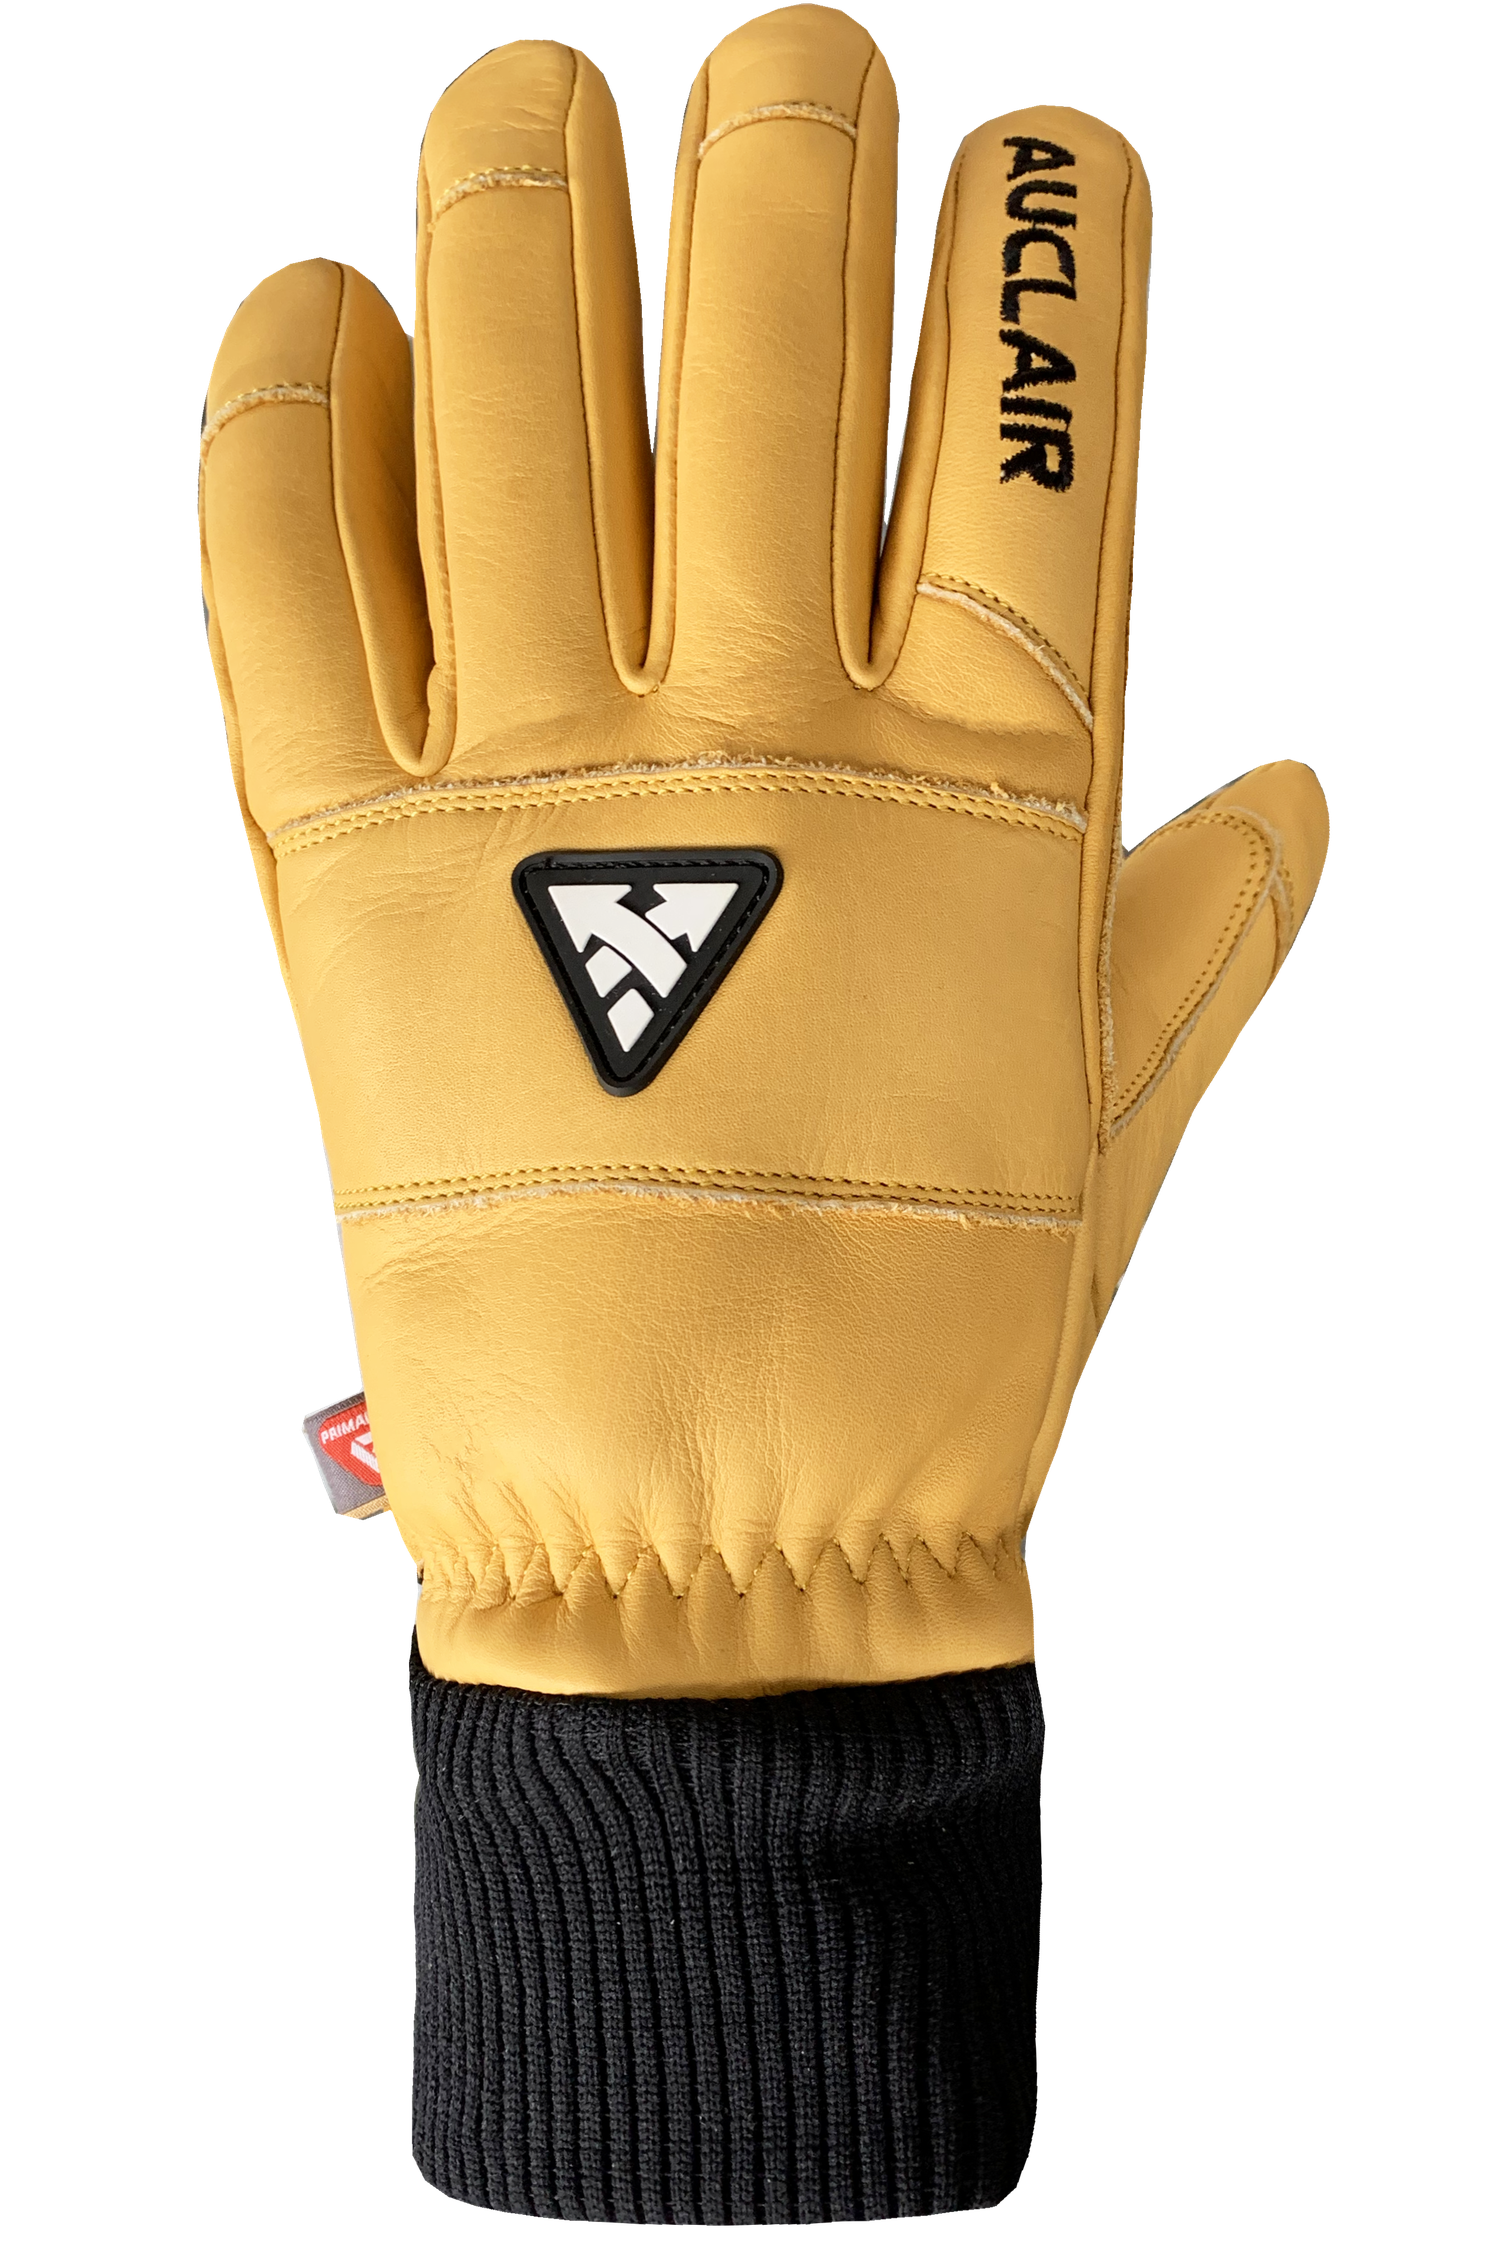 Glades Gloves - Adult, Gold/Black